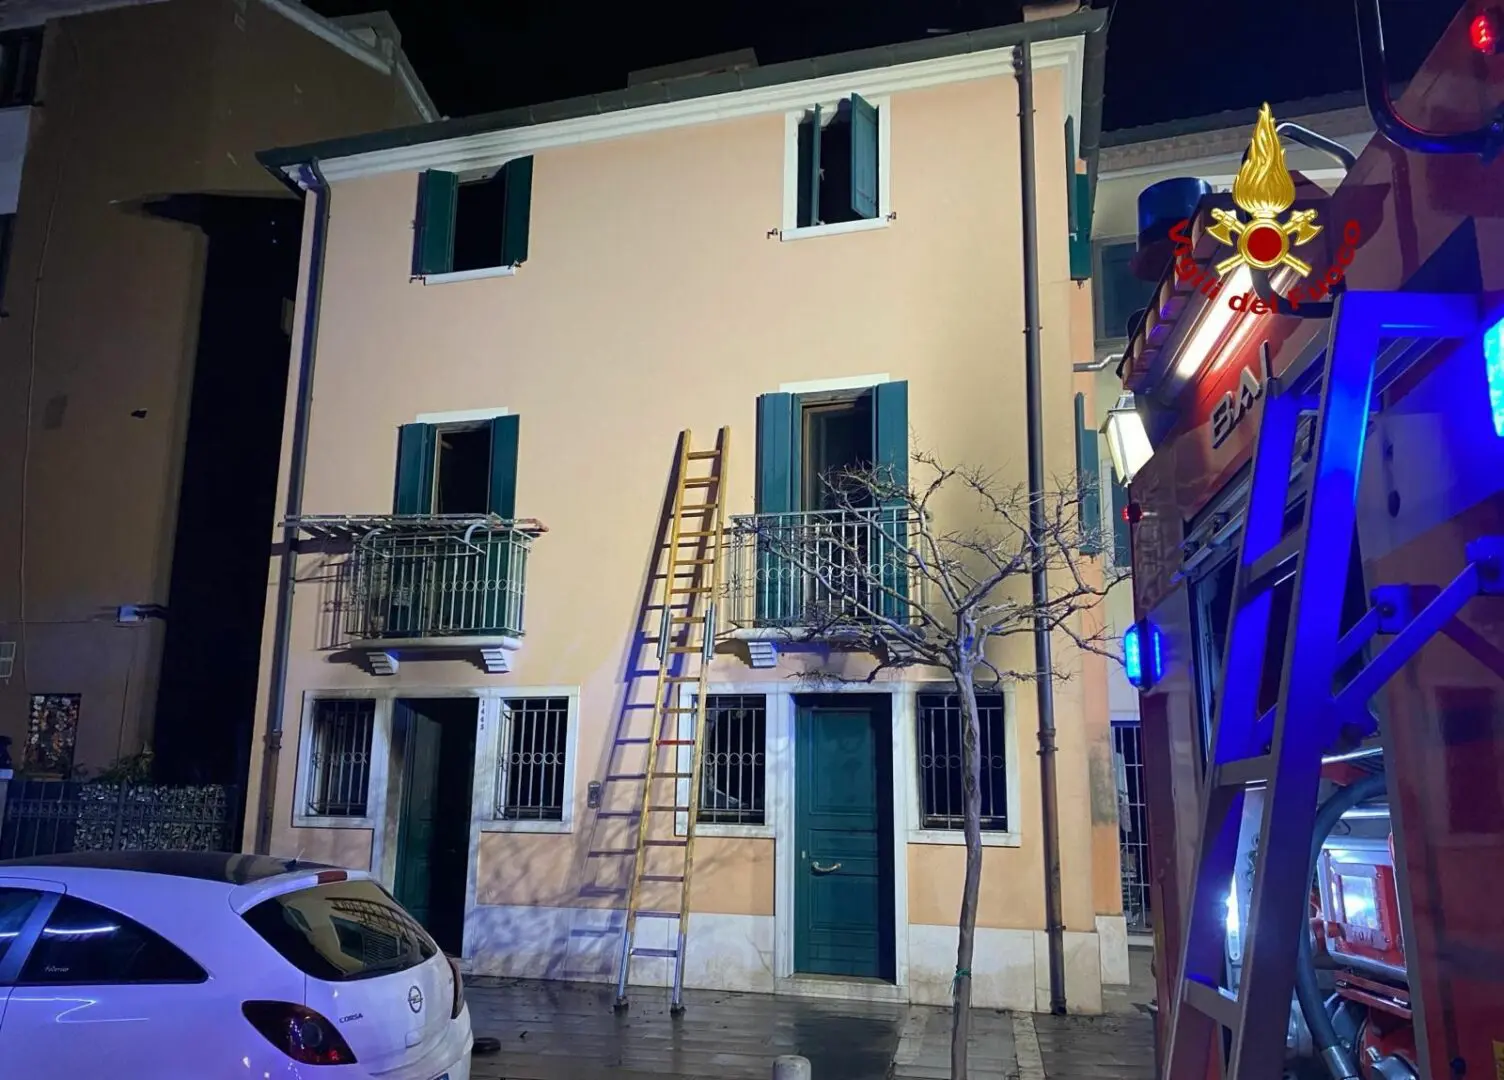 Incendio in abitazione a Chioggia, 3 morti